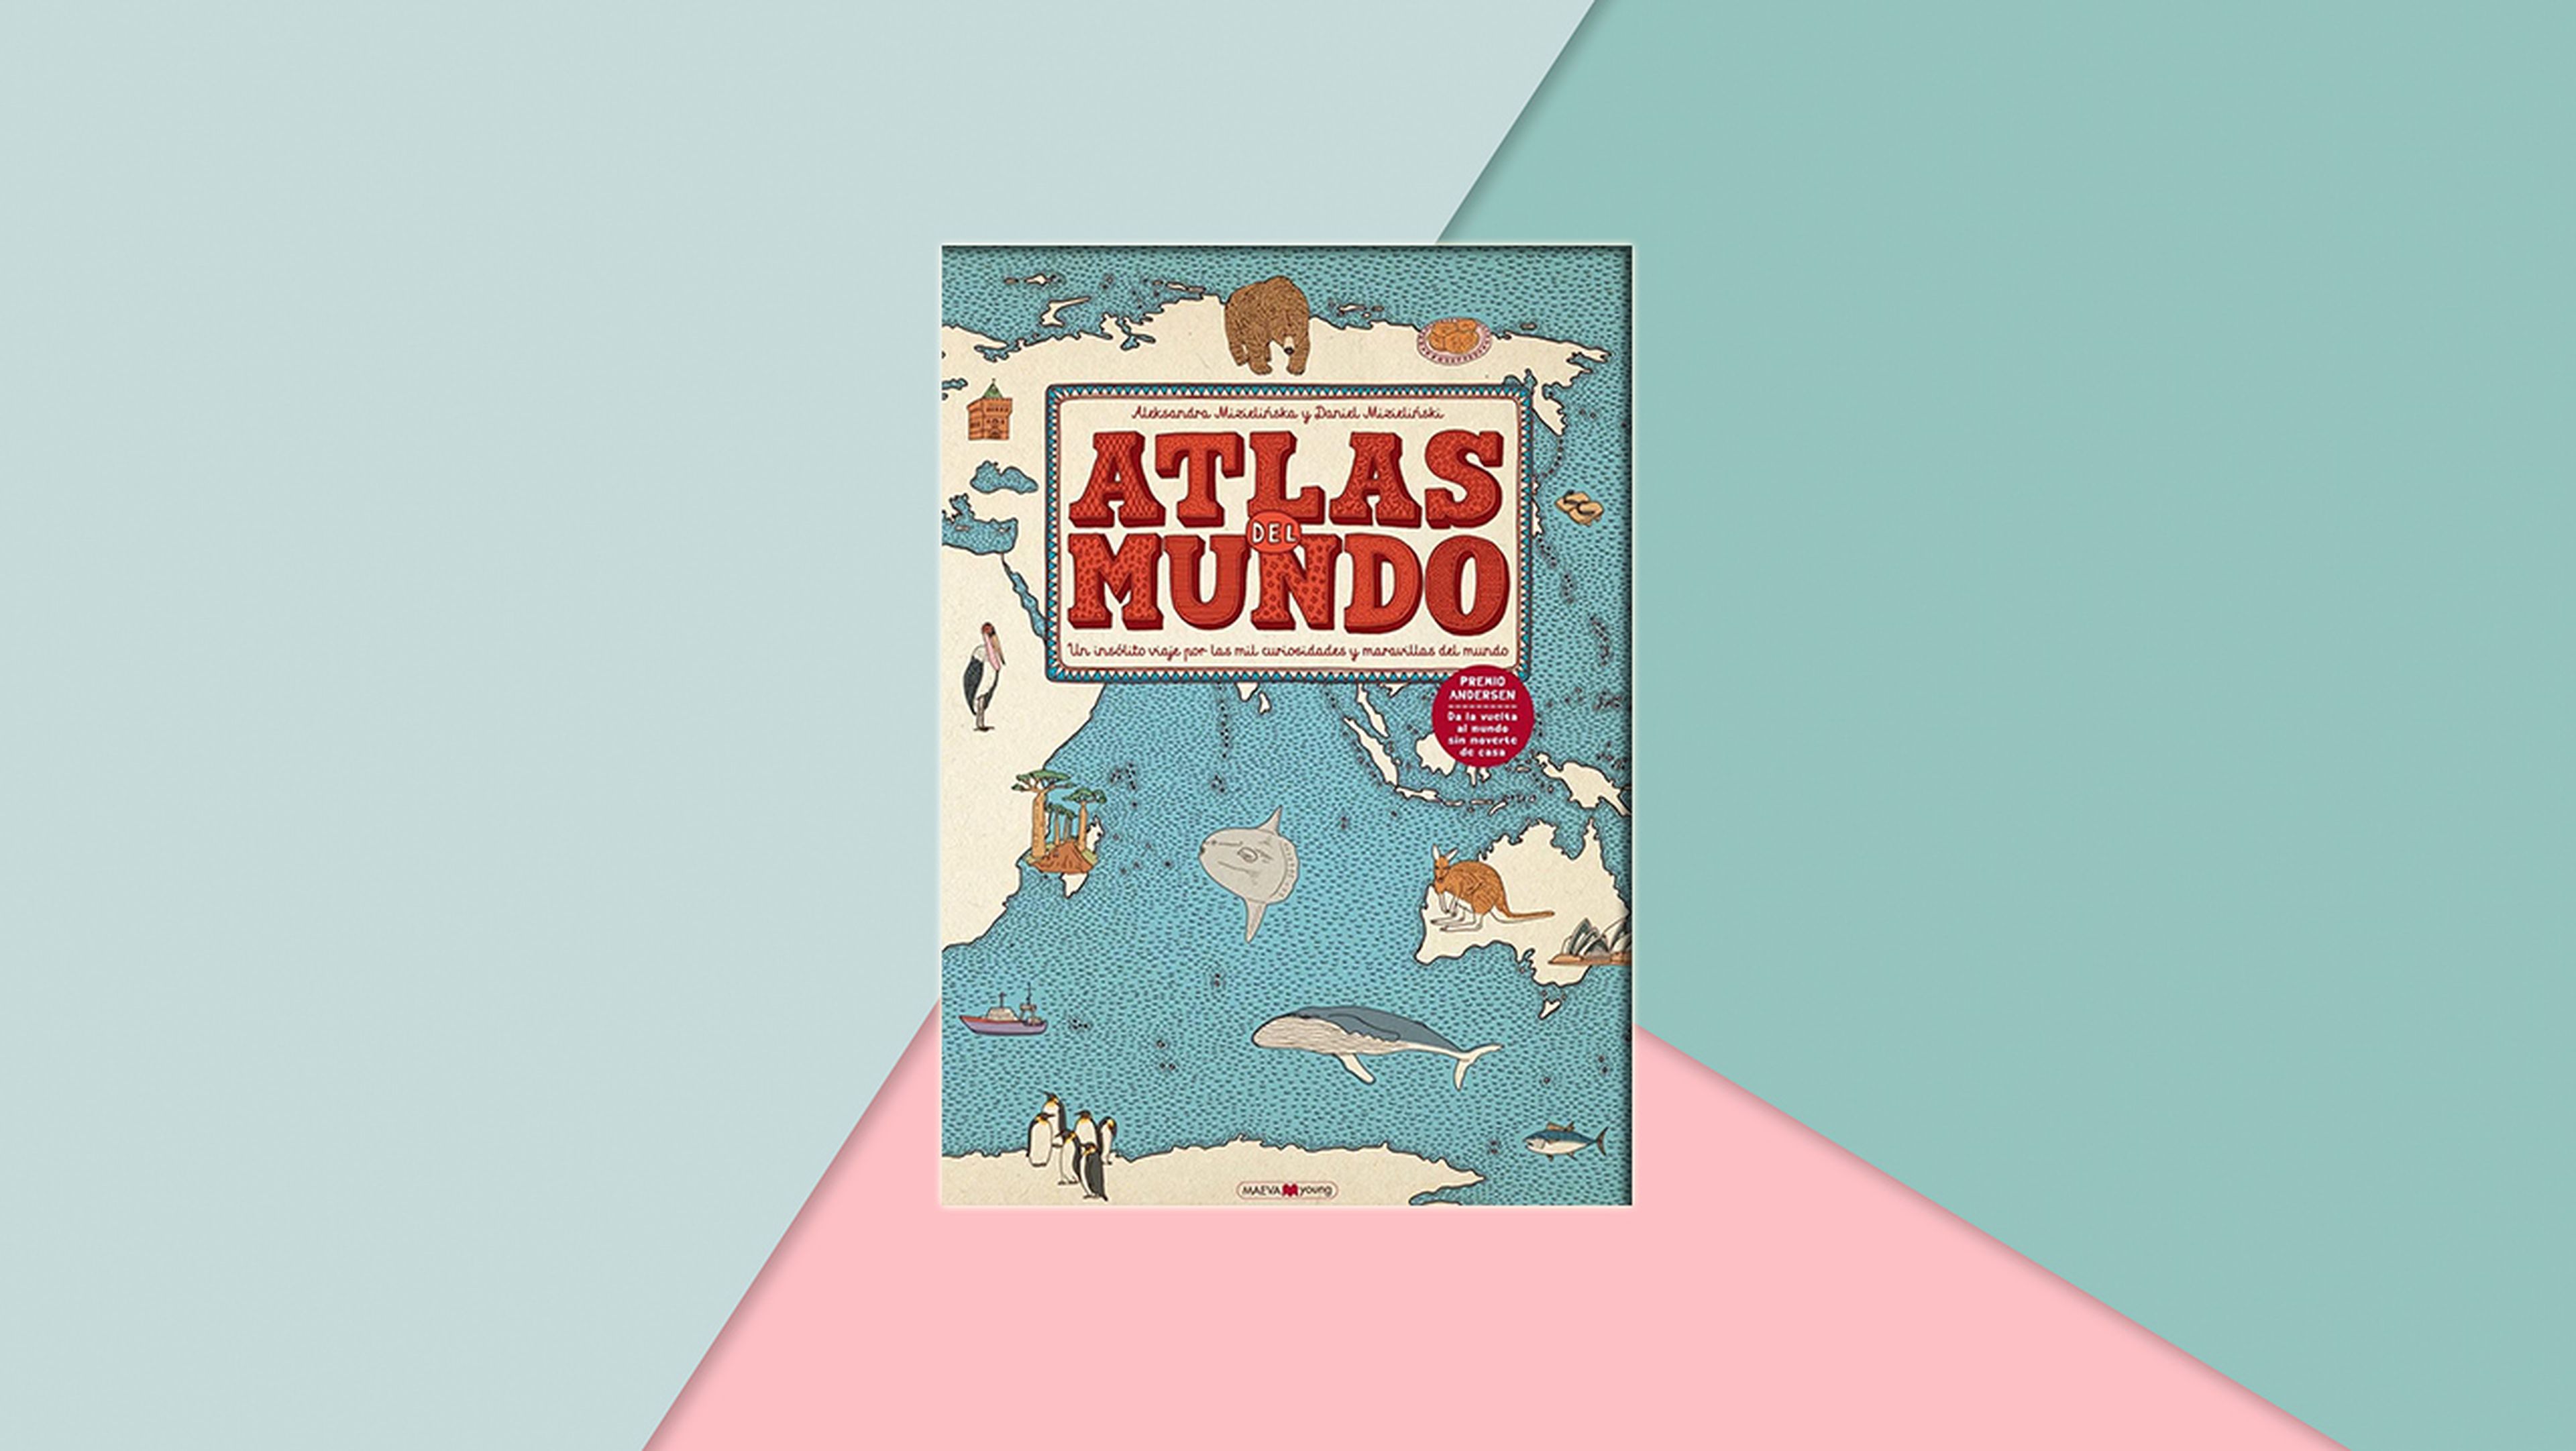 Atlas del mundo: Un insólito viaje por las mil curiosidades y maravillas del mundo